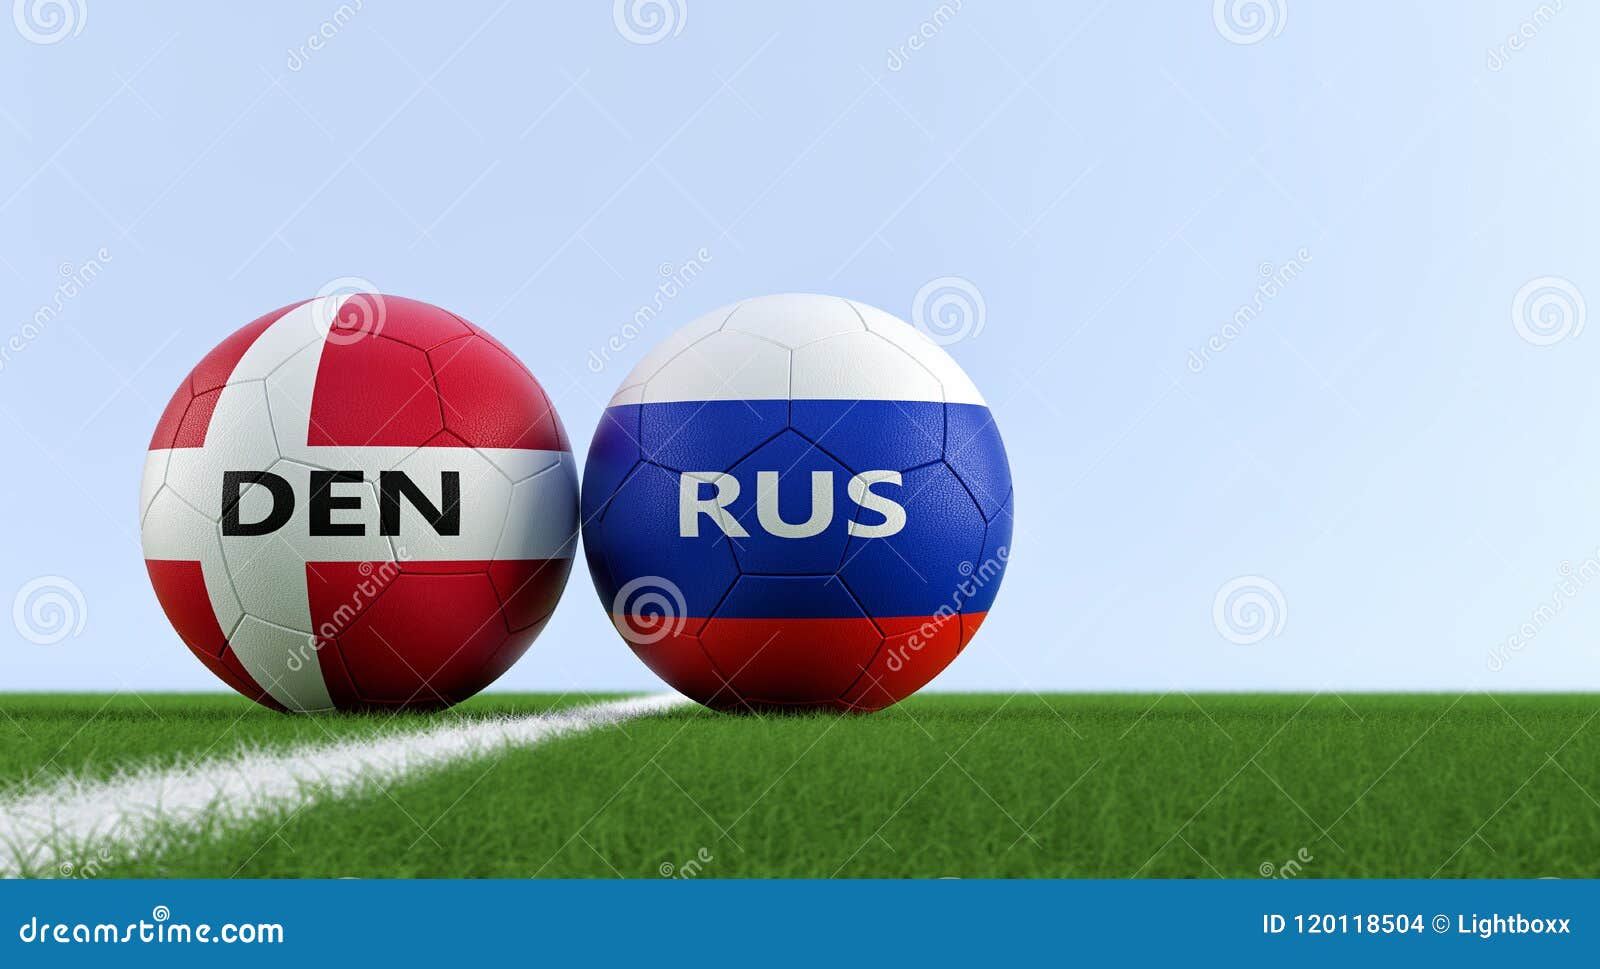 Russia vs denmark